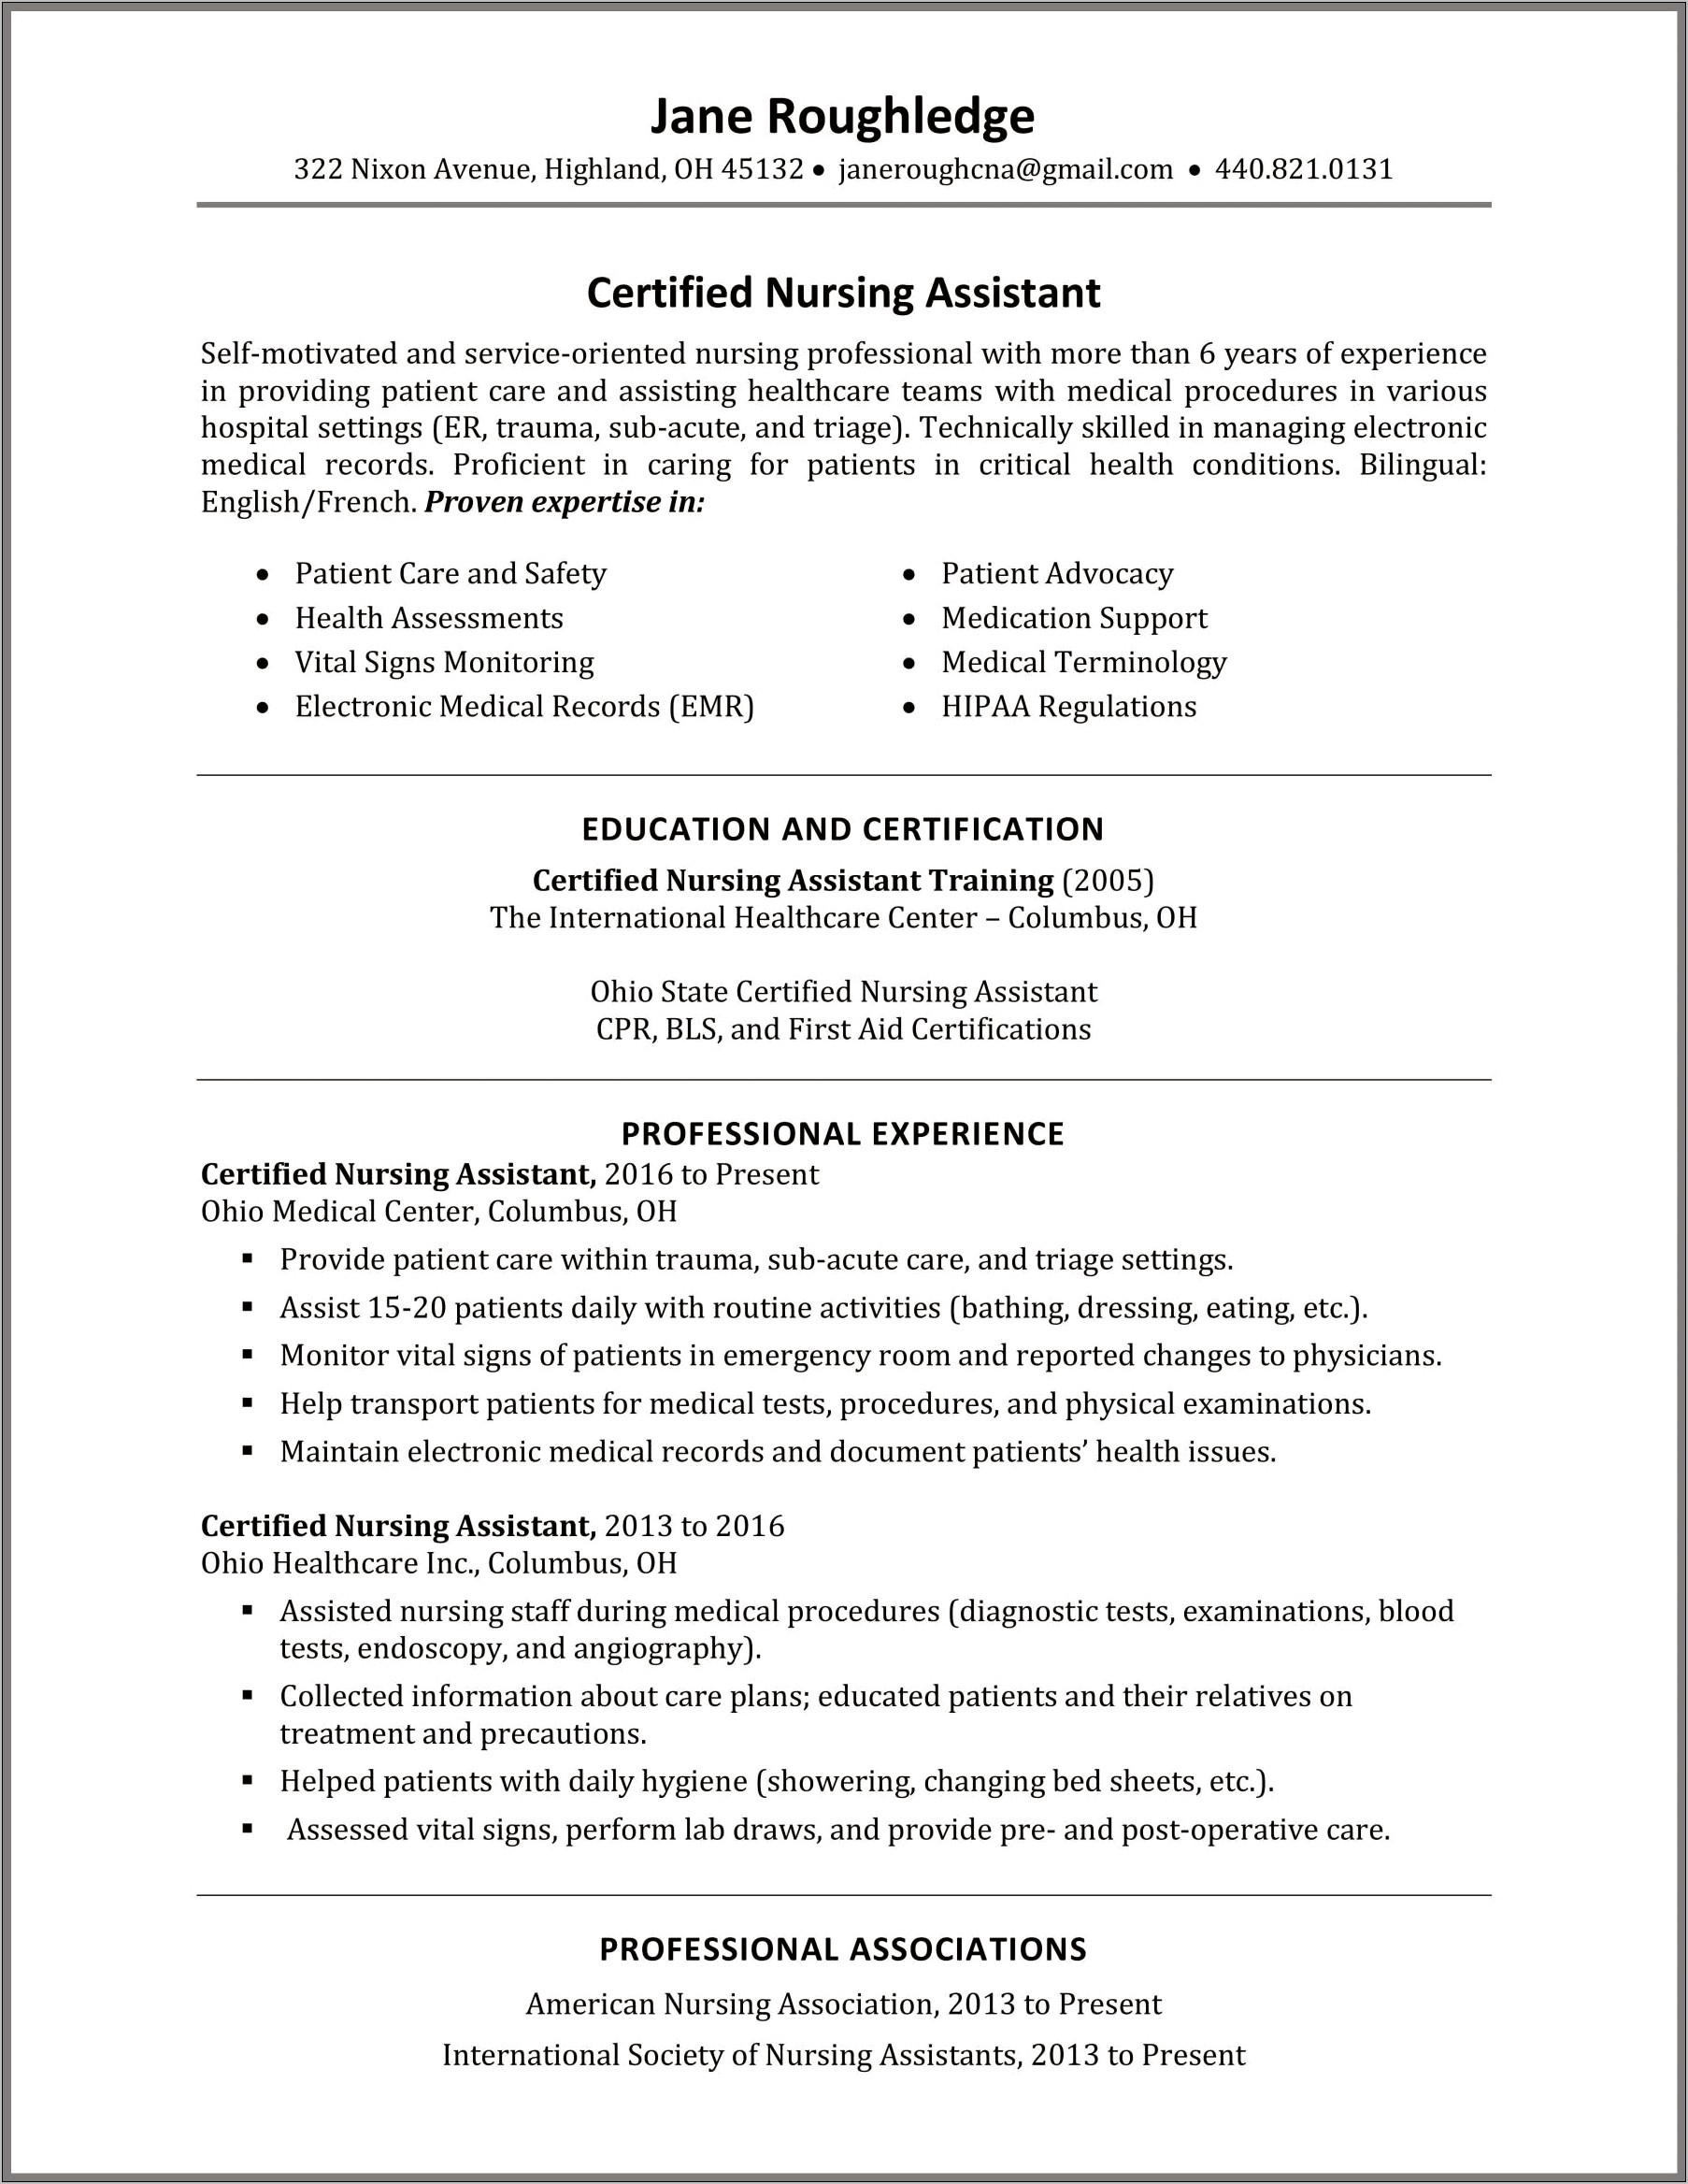 Nursing Assistant Work Description For Resume